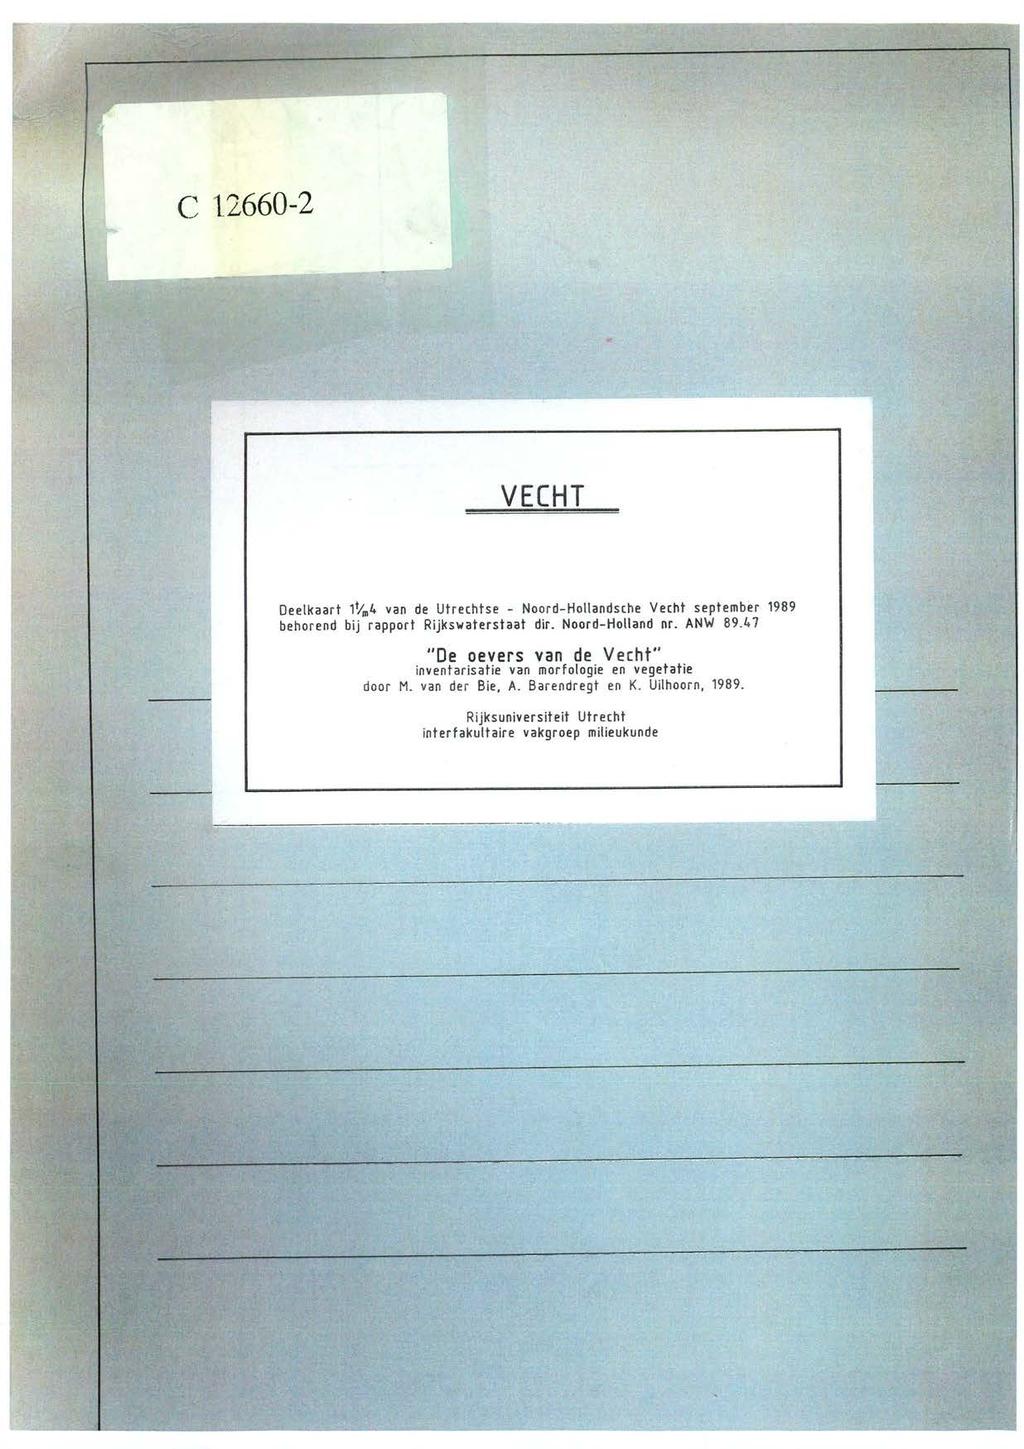 C 12660-2 VECHT Deelkaart lt/m4 van de Utrechtse - Noord-Hotiandsche Vecht september 1989 behorend bij rapport Rijkswaterstaat dir. Noord-Holland nr. ANW 89.